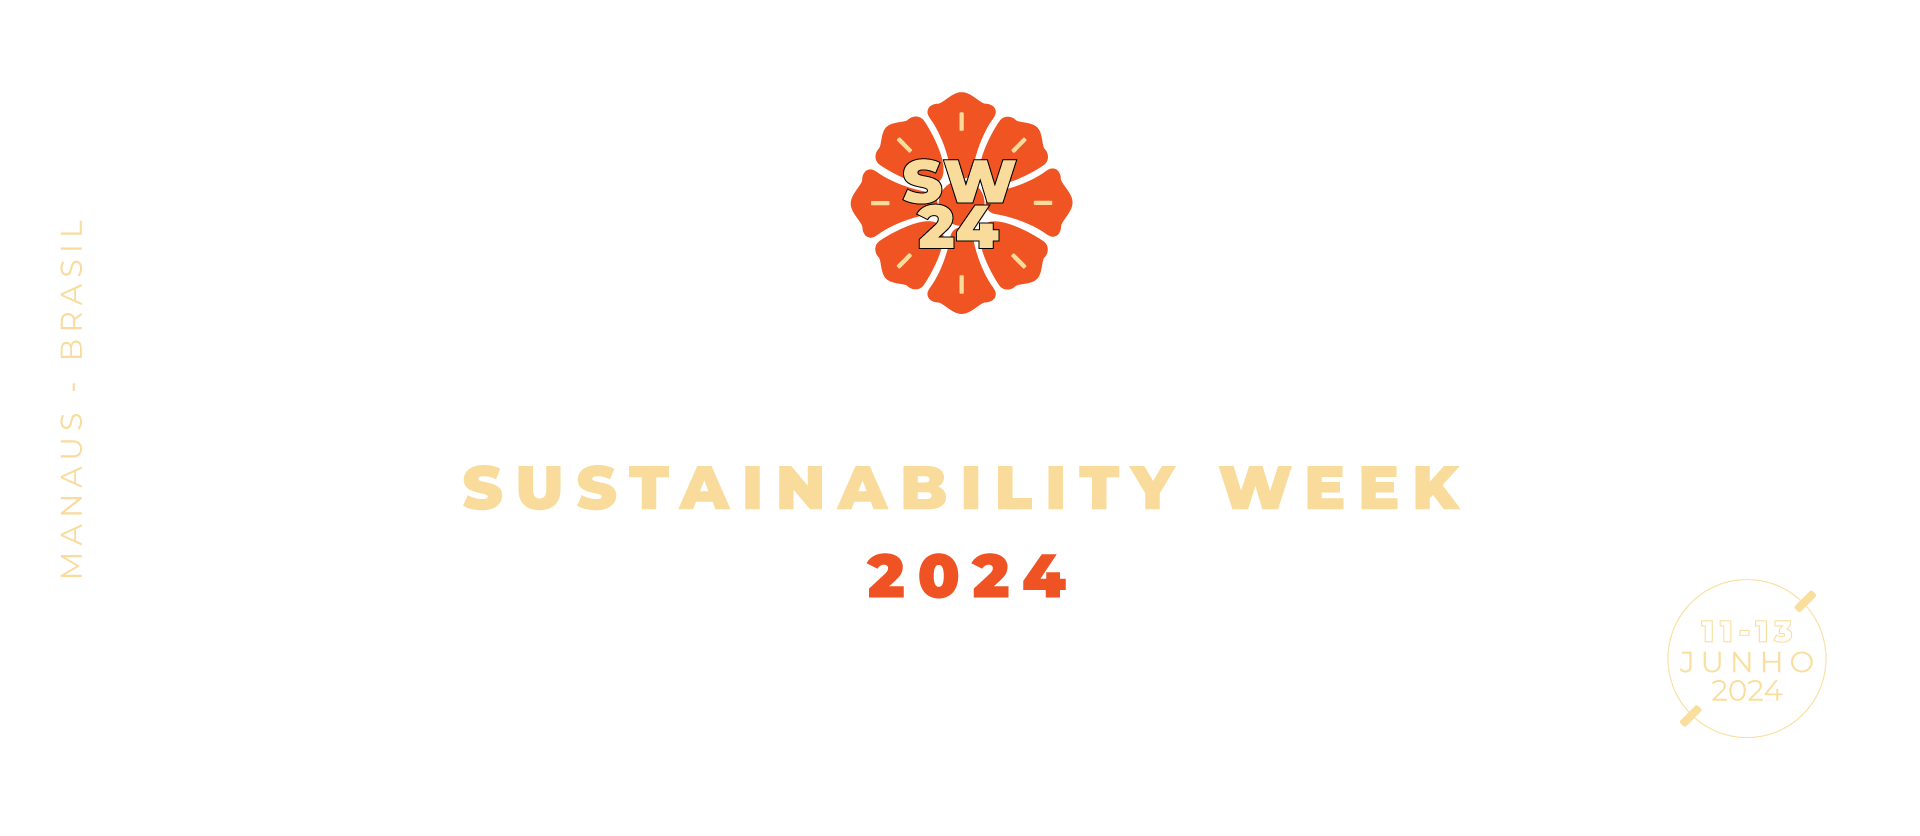 Semana da Sustentabilidade 2024 logos